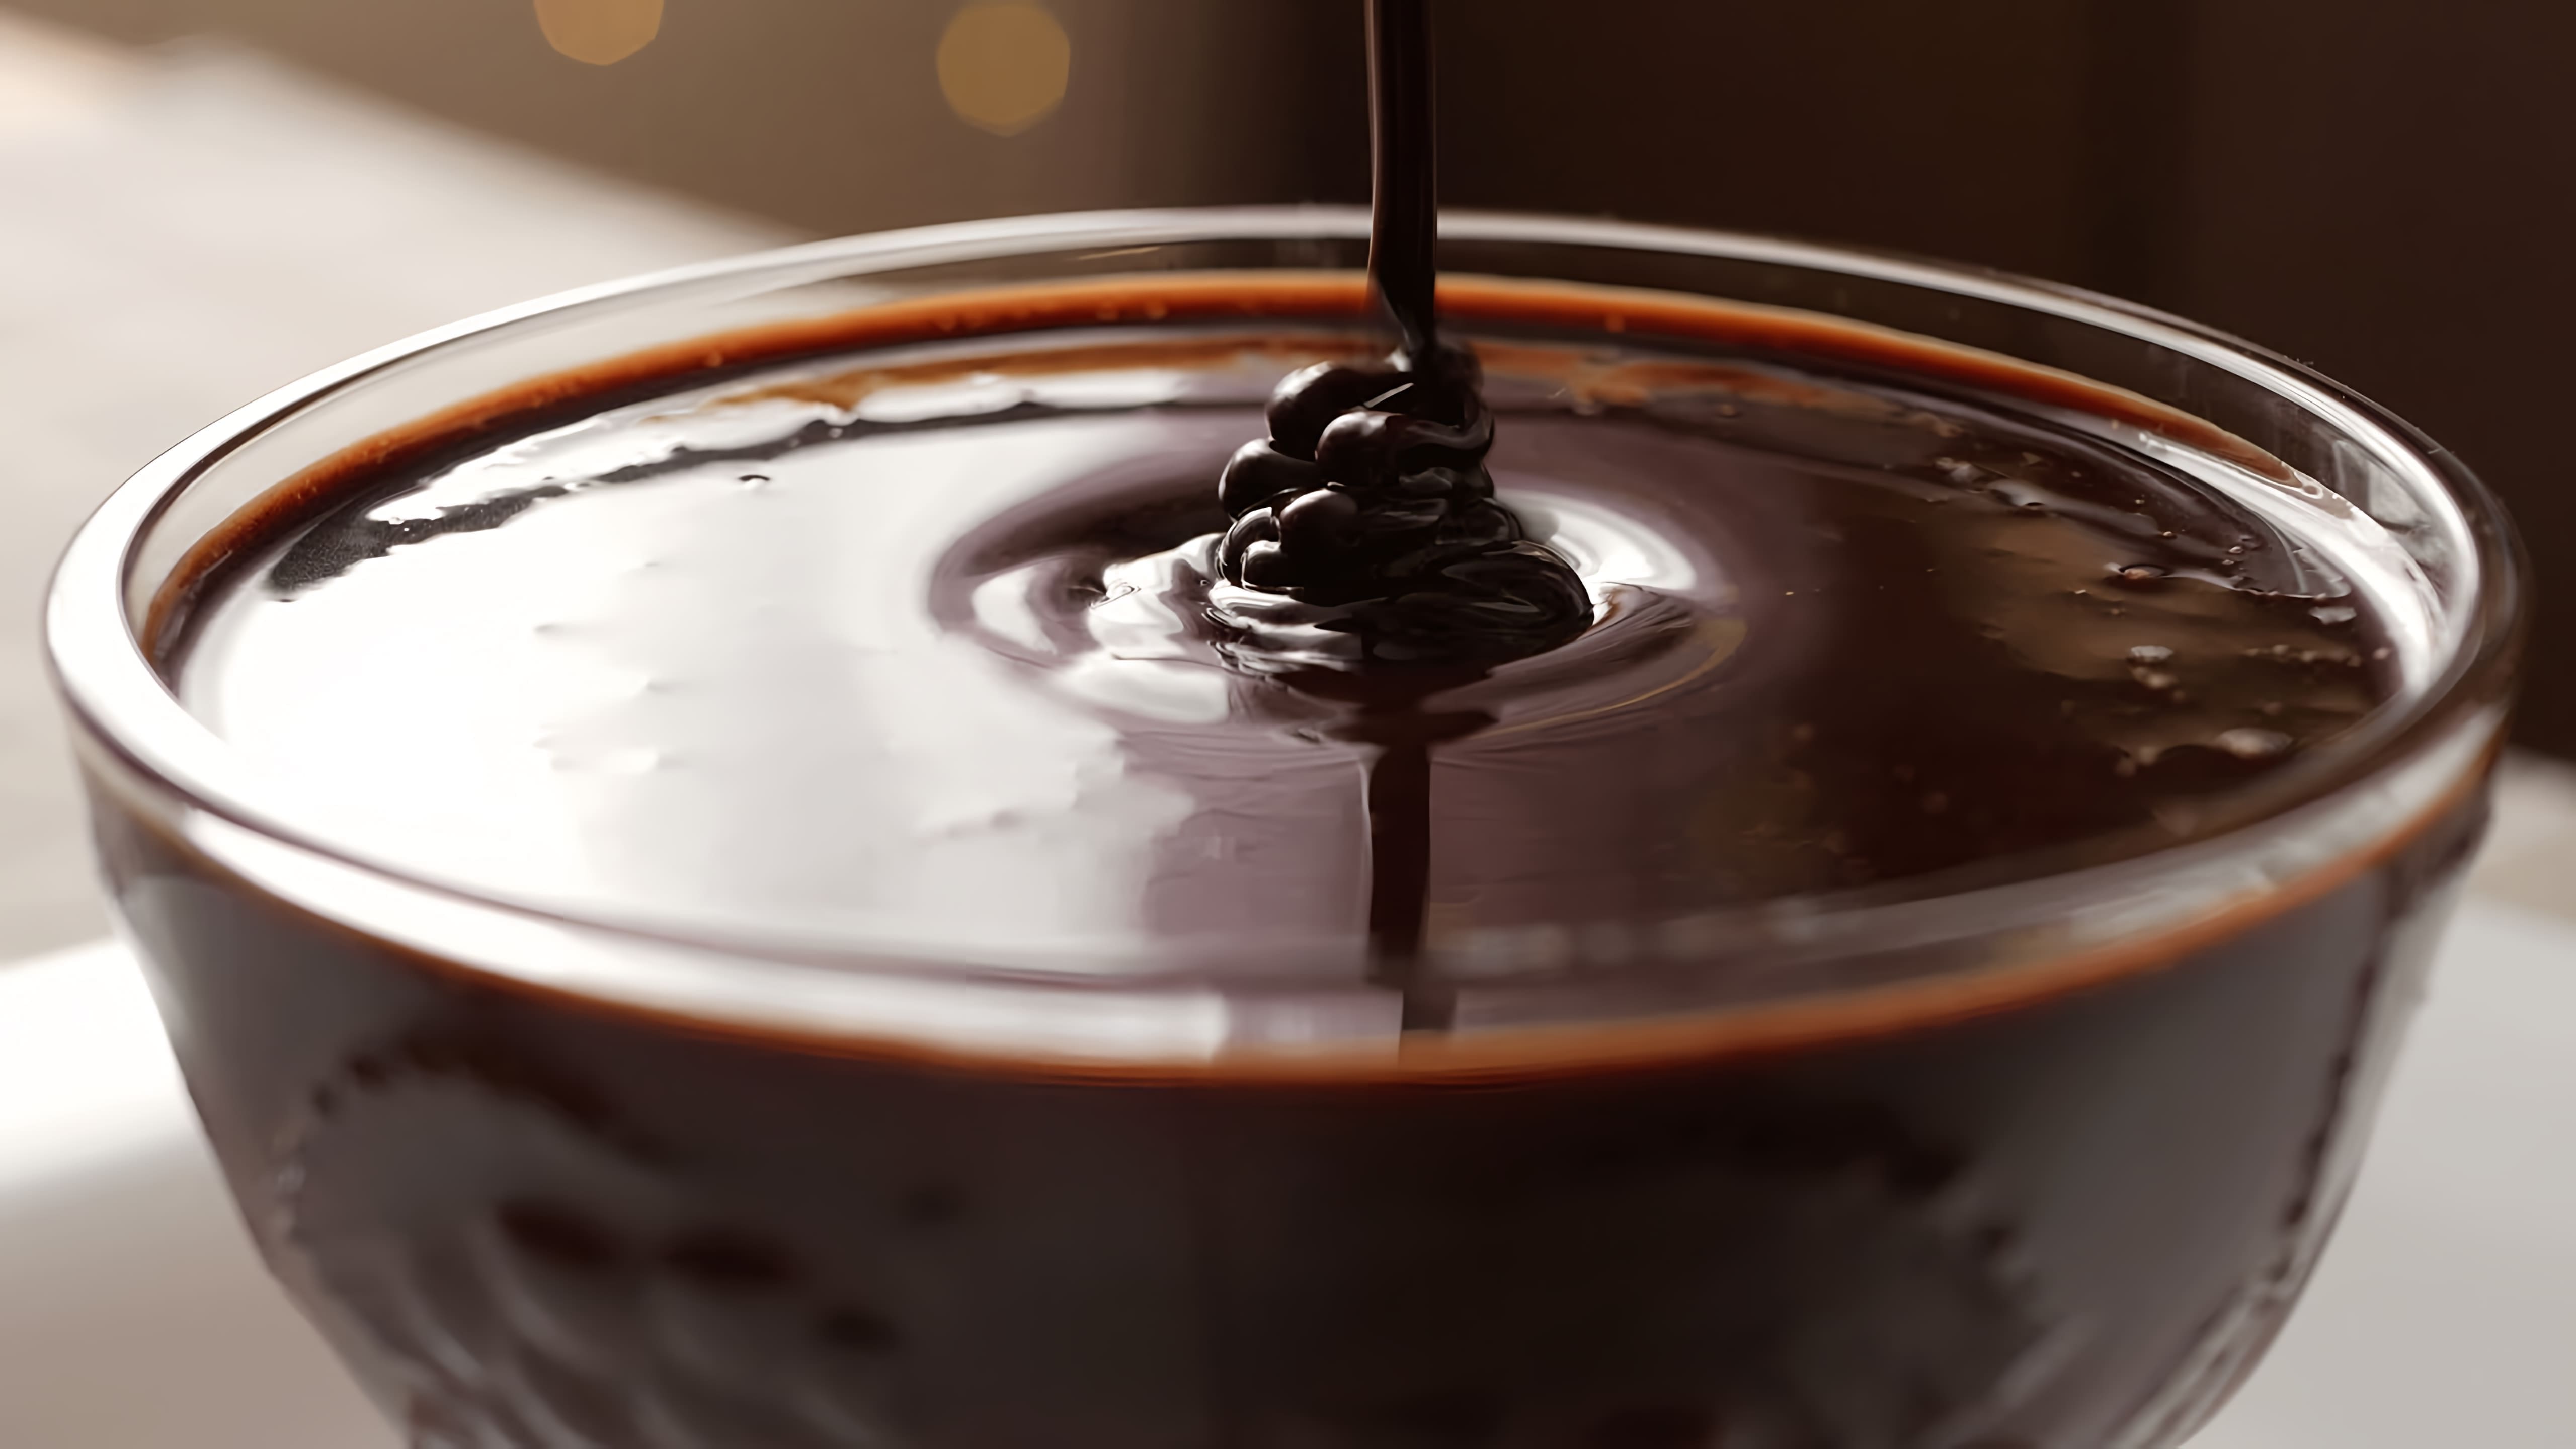 В этом видео демонстрируется простой рецепт шоколадного сиропа, который можно приготовить в домашних условиях